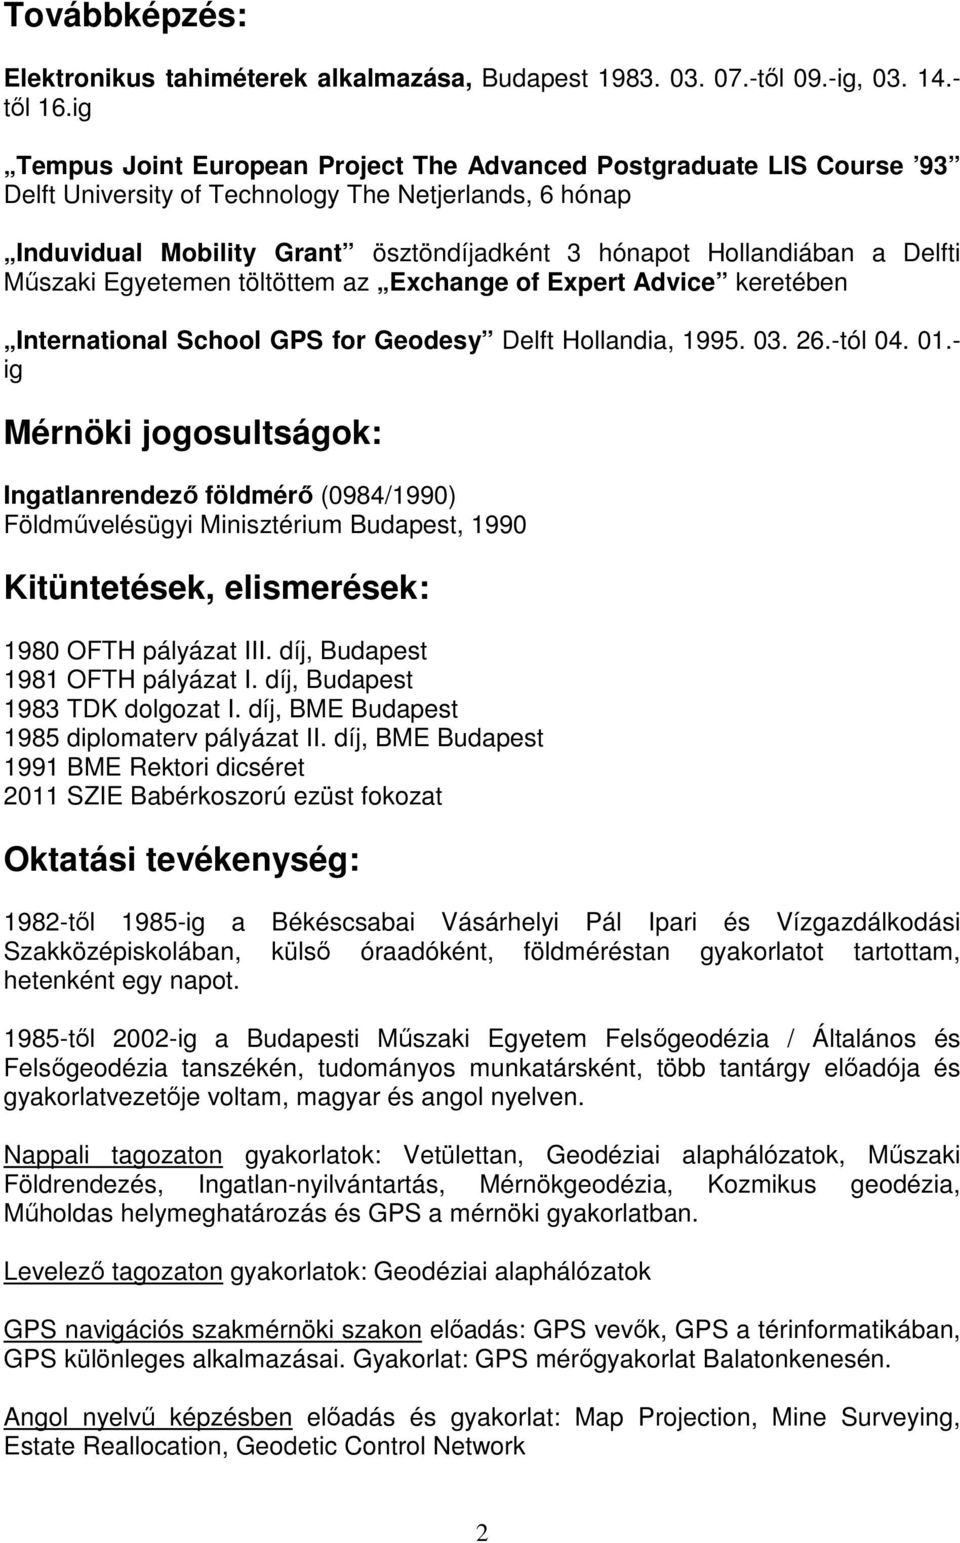 Delfti Műszaki Egyetemen töltöttem az Exchange of Expert Advice keretében International School GPS for Geodesy Delft Hollandia, 1995. 03. 26.-tól 04. 01.